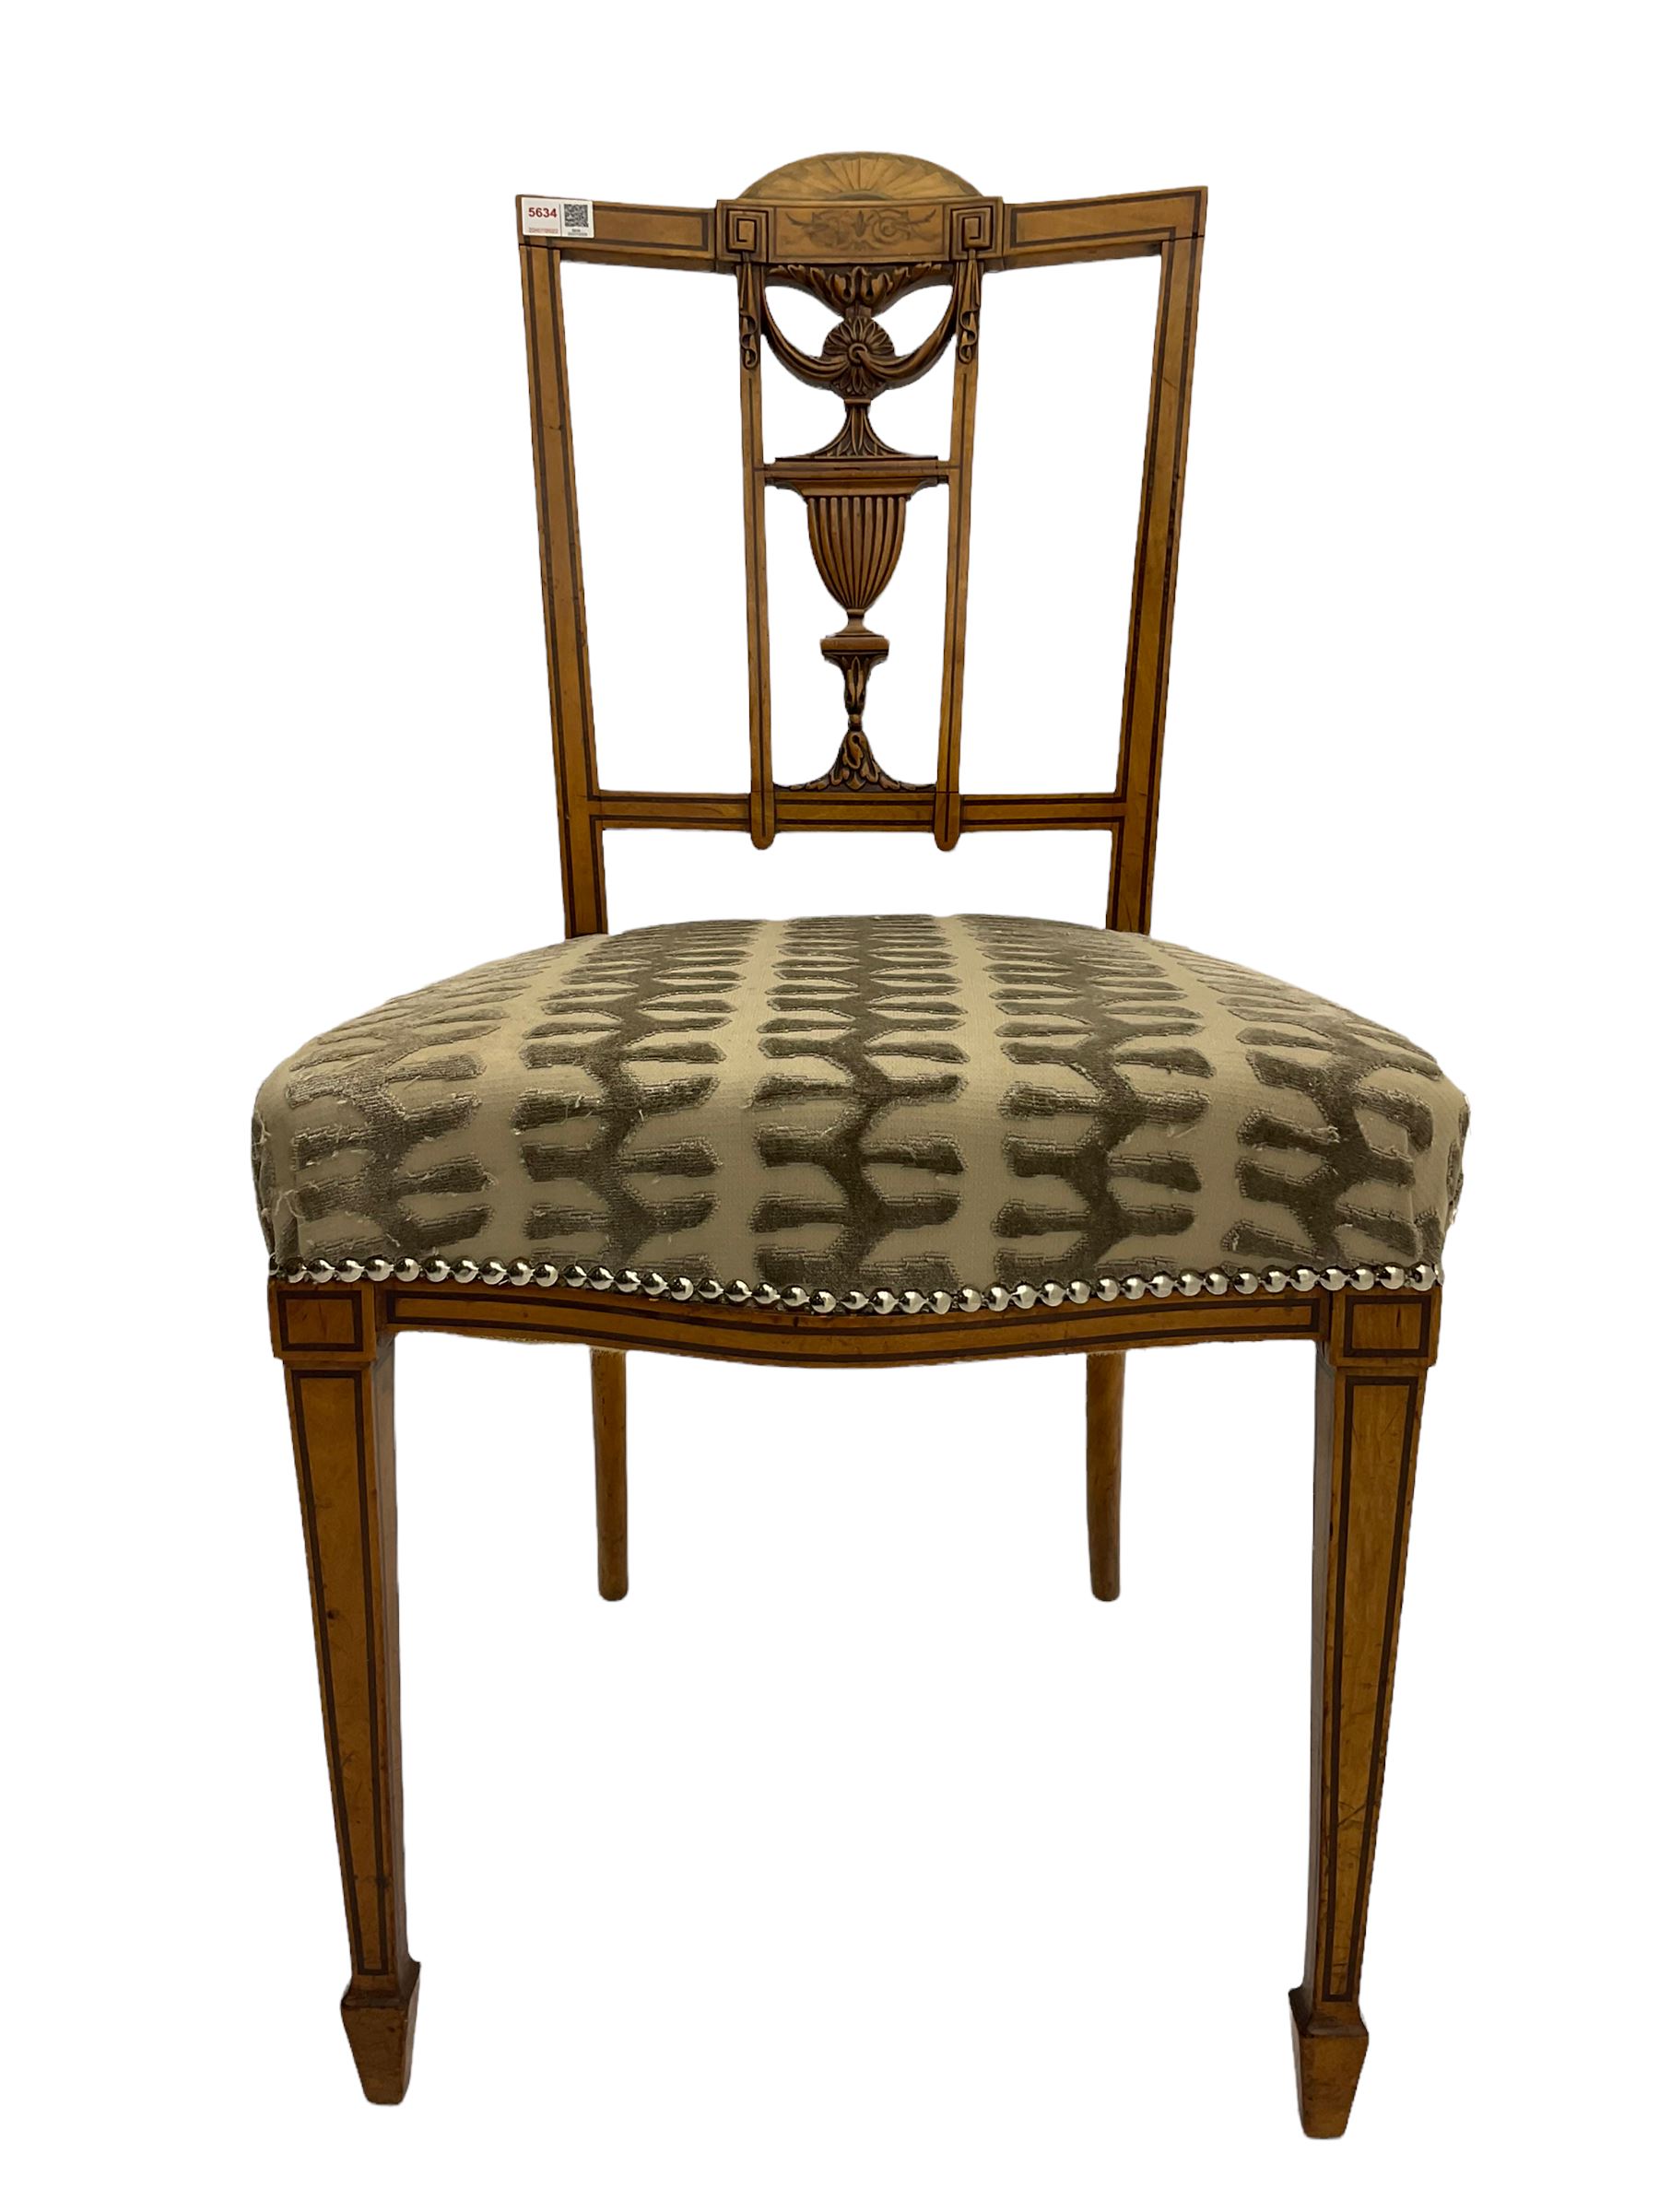 Edwardian satinwood bedroom chair - Image 2 of 2